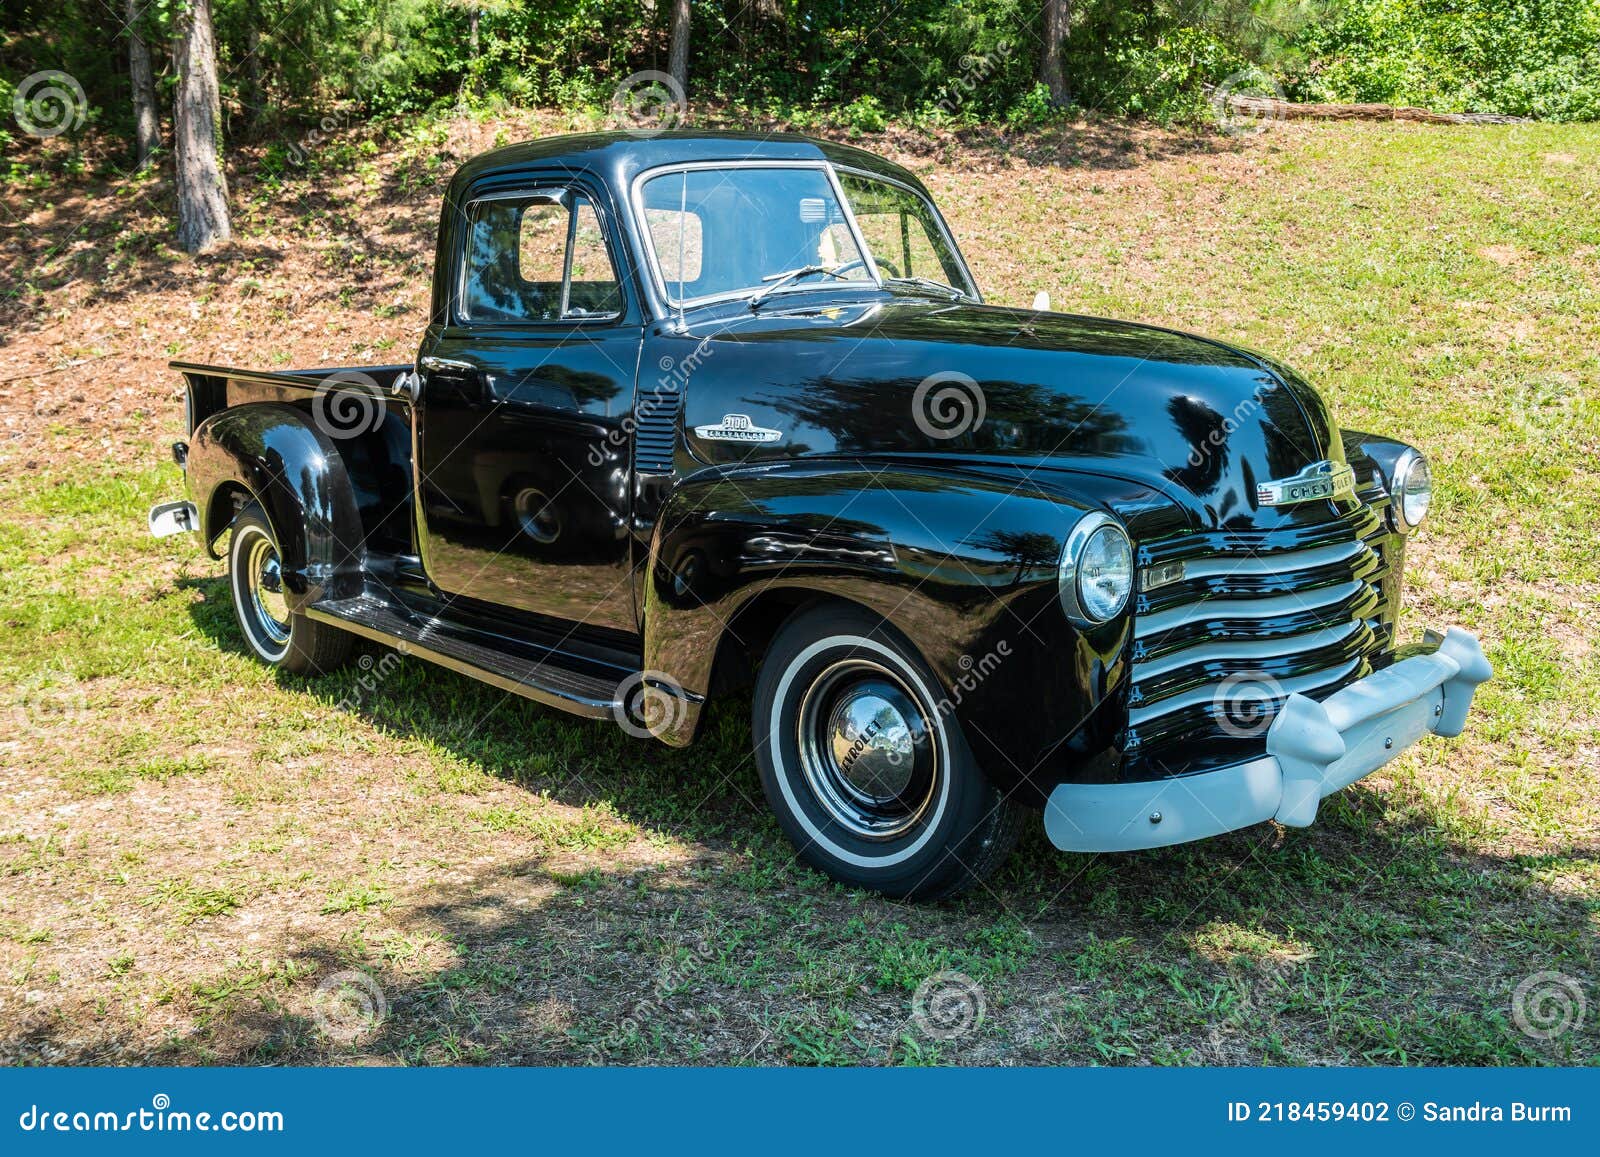 1950 chevy truck restoration